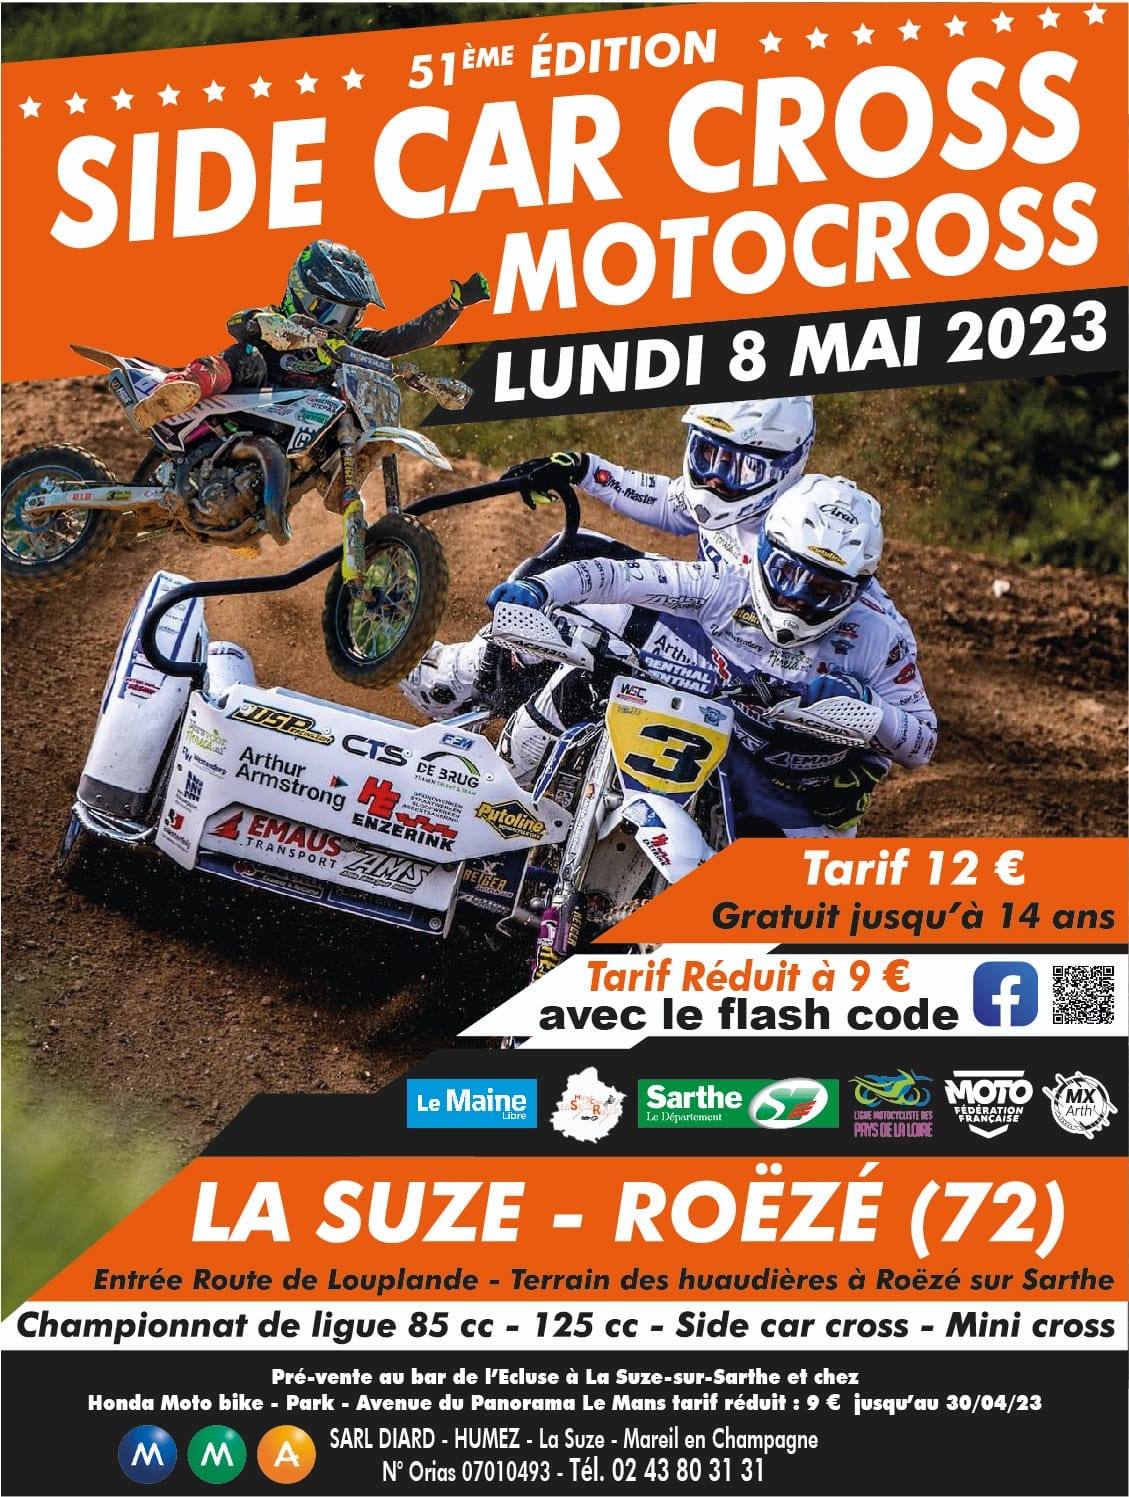 Info Motocross - épreuve La Suze Roëzé (72) 8 mai